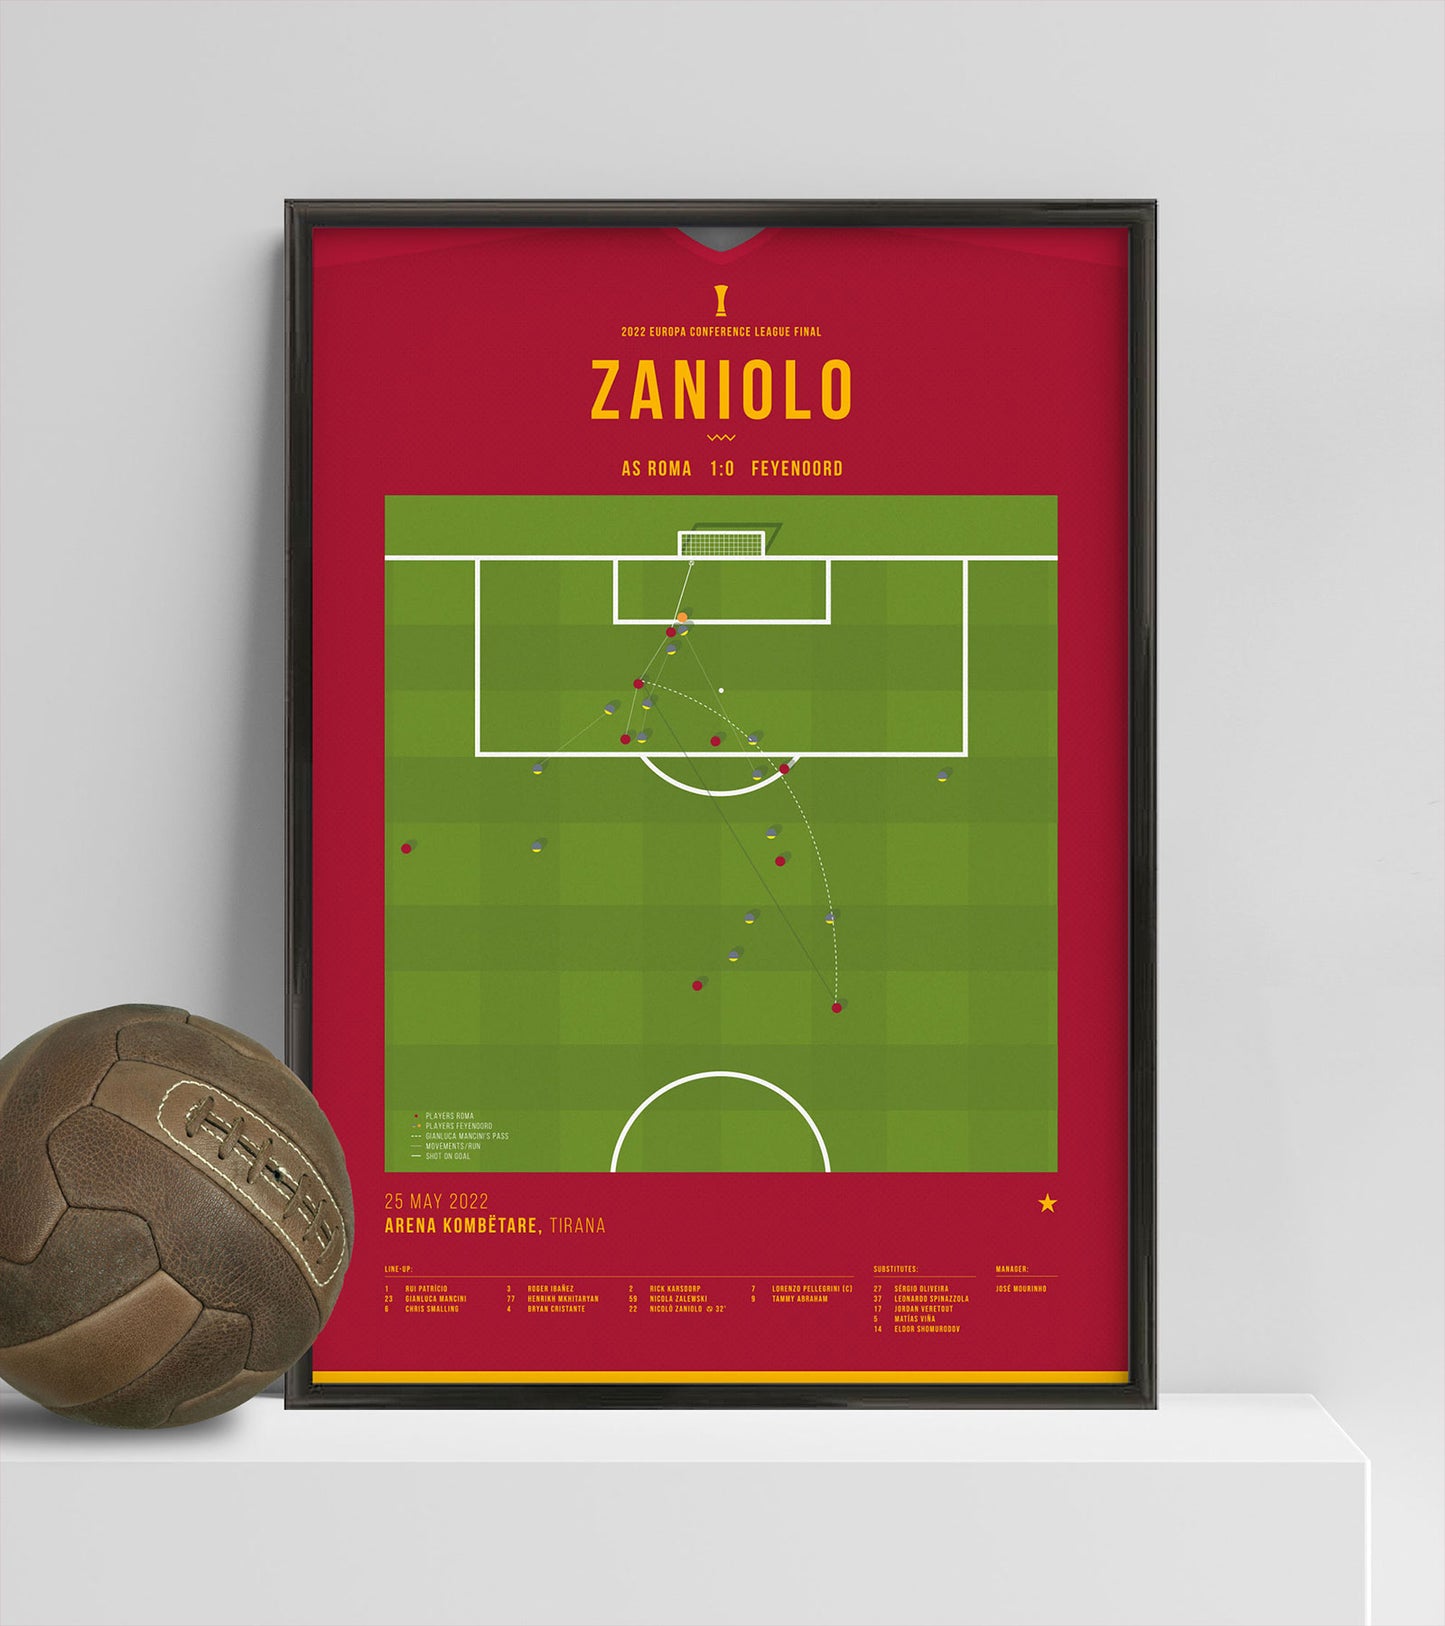 El gol de Zaniolo le da a la Roma su primer título de la Liga de Conferencias